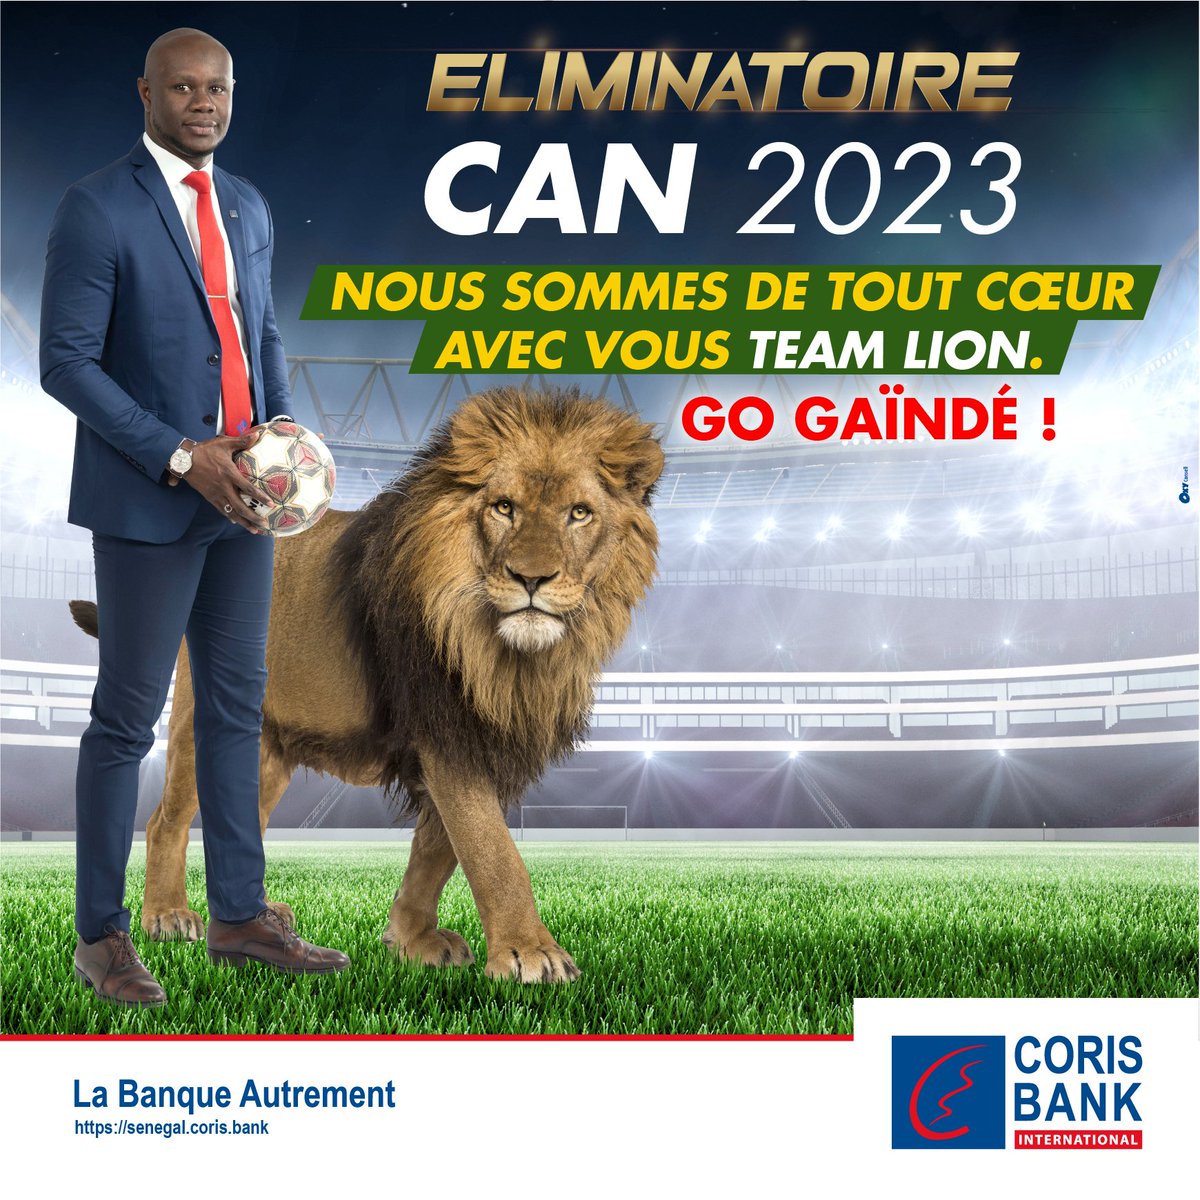 𝗘́𝗟𝗜𝗠𝗜𝗡𝗔𝗧𝗢𝗜𝗥𝗘𝗦 𝗖𝗔𝗡 𝟮𝟬𝟮𝟯 : 𝗠𝗮𝘁𝗰𝗵 𝗮𝗹𝗹𝗲𝗿
Tous mobilisés pour nos Lions.
En avant pour la victoire💪
#GoGainde #EliminatoiresCan2023 #CBISénégal #BanqueDesLions